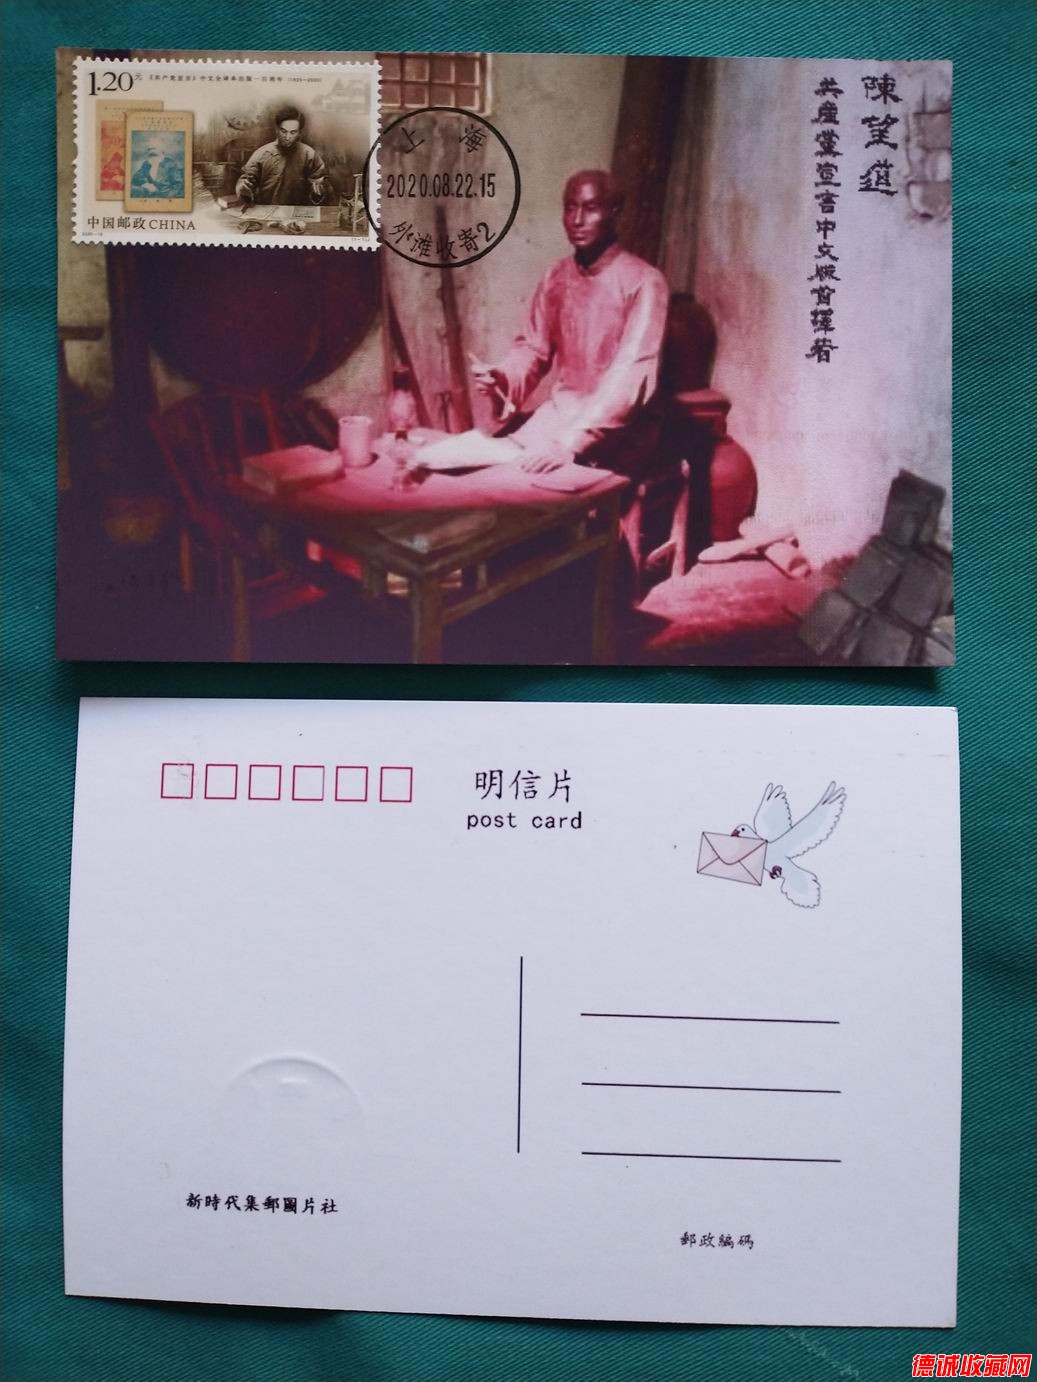 2020年共產黨宣言郵票極限片1枚(上海首日戳)之一.jpg